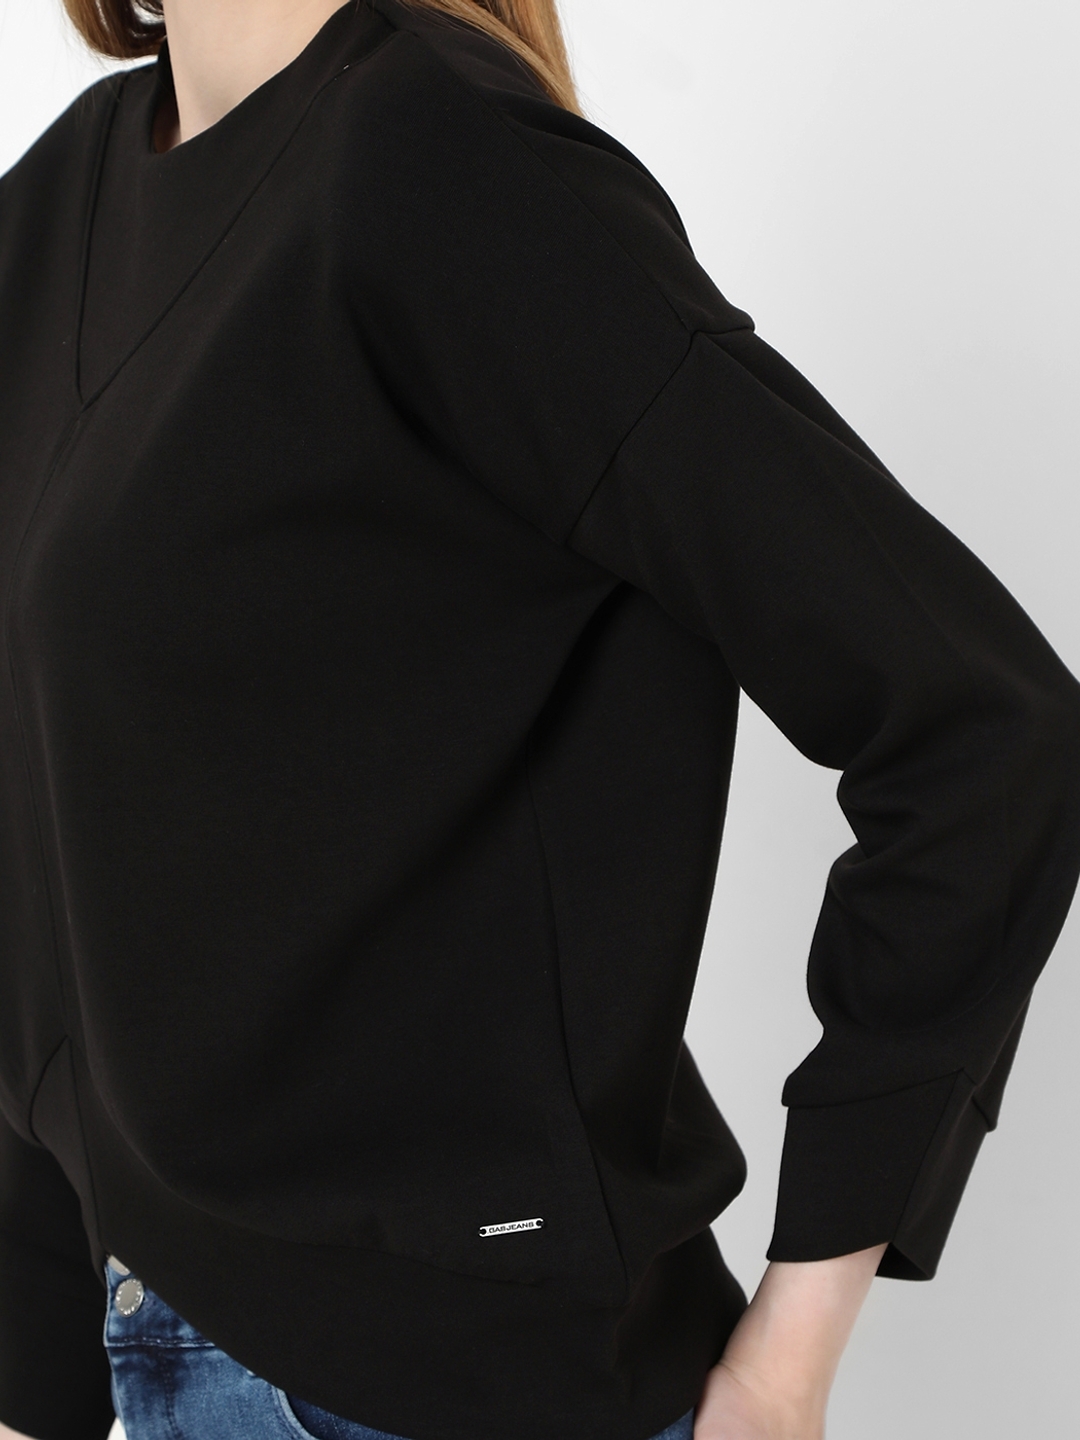 Alexis Sweatshirt with Back-Zip Closure